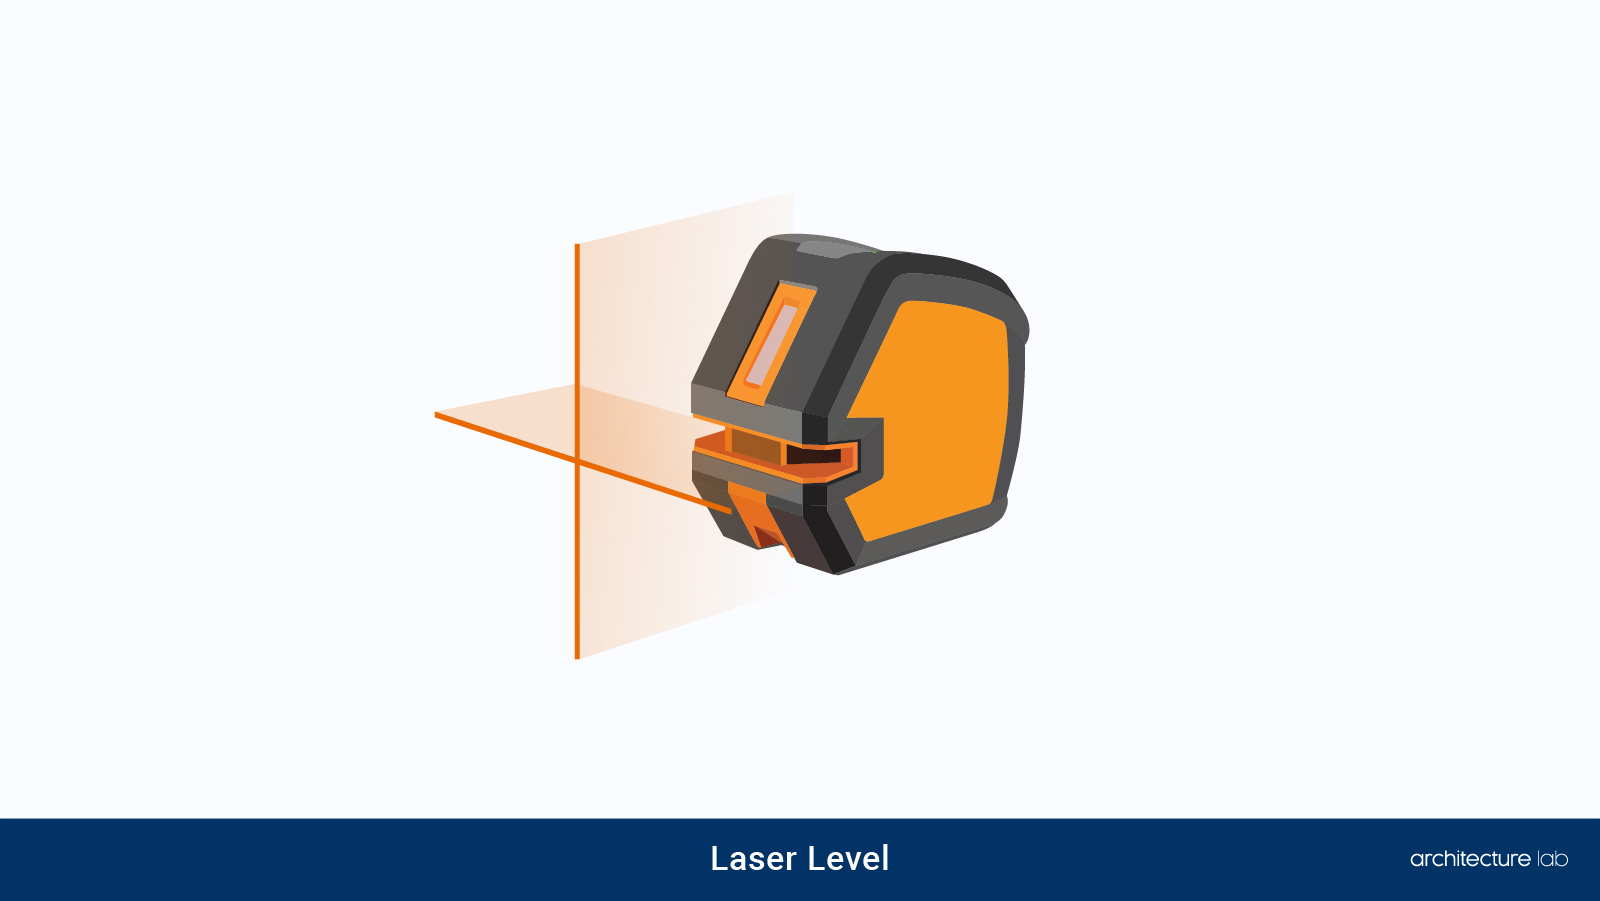 7. Laser level